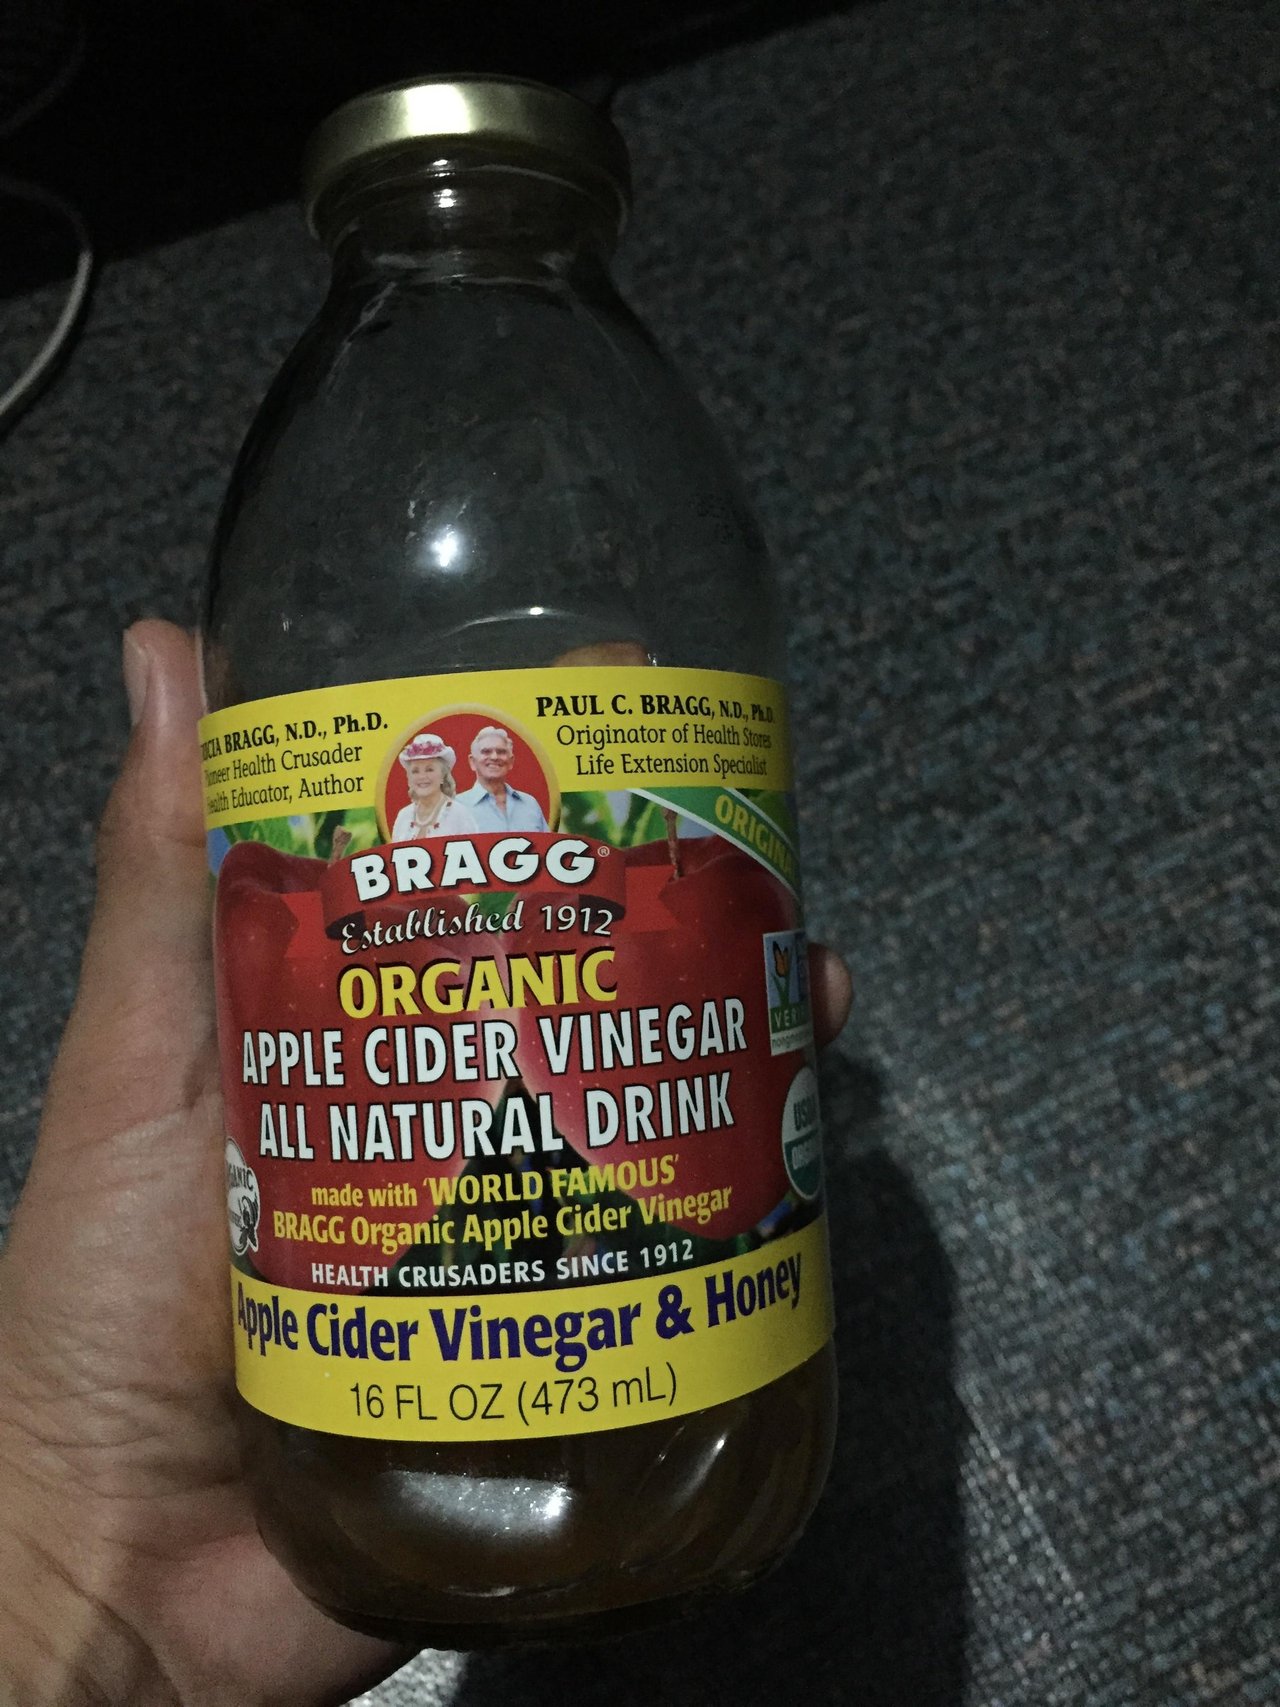 apple cider vinegar + honey: good for your health